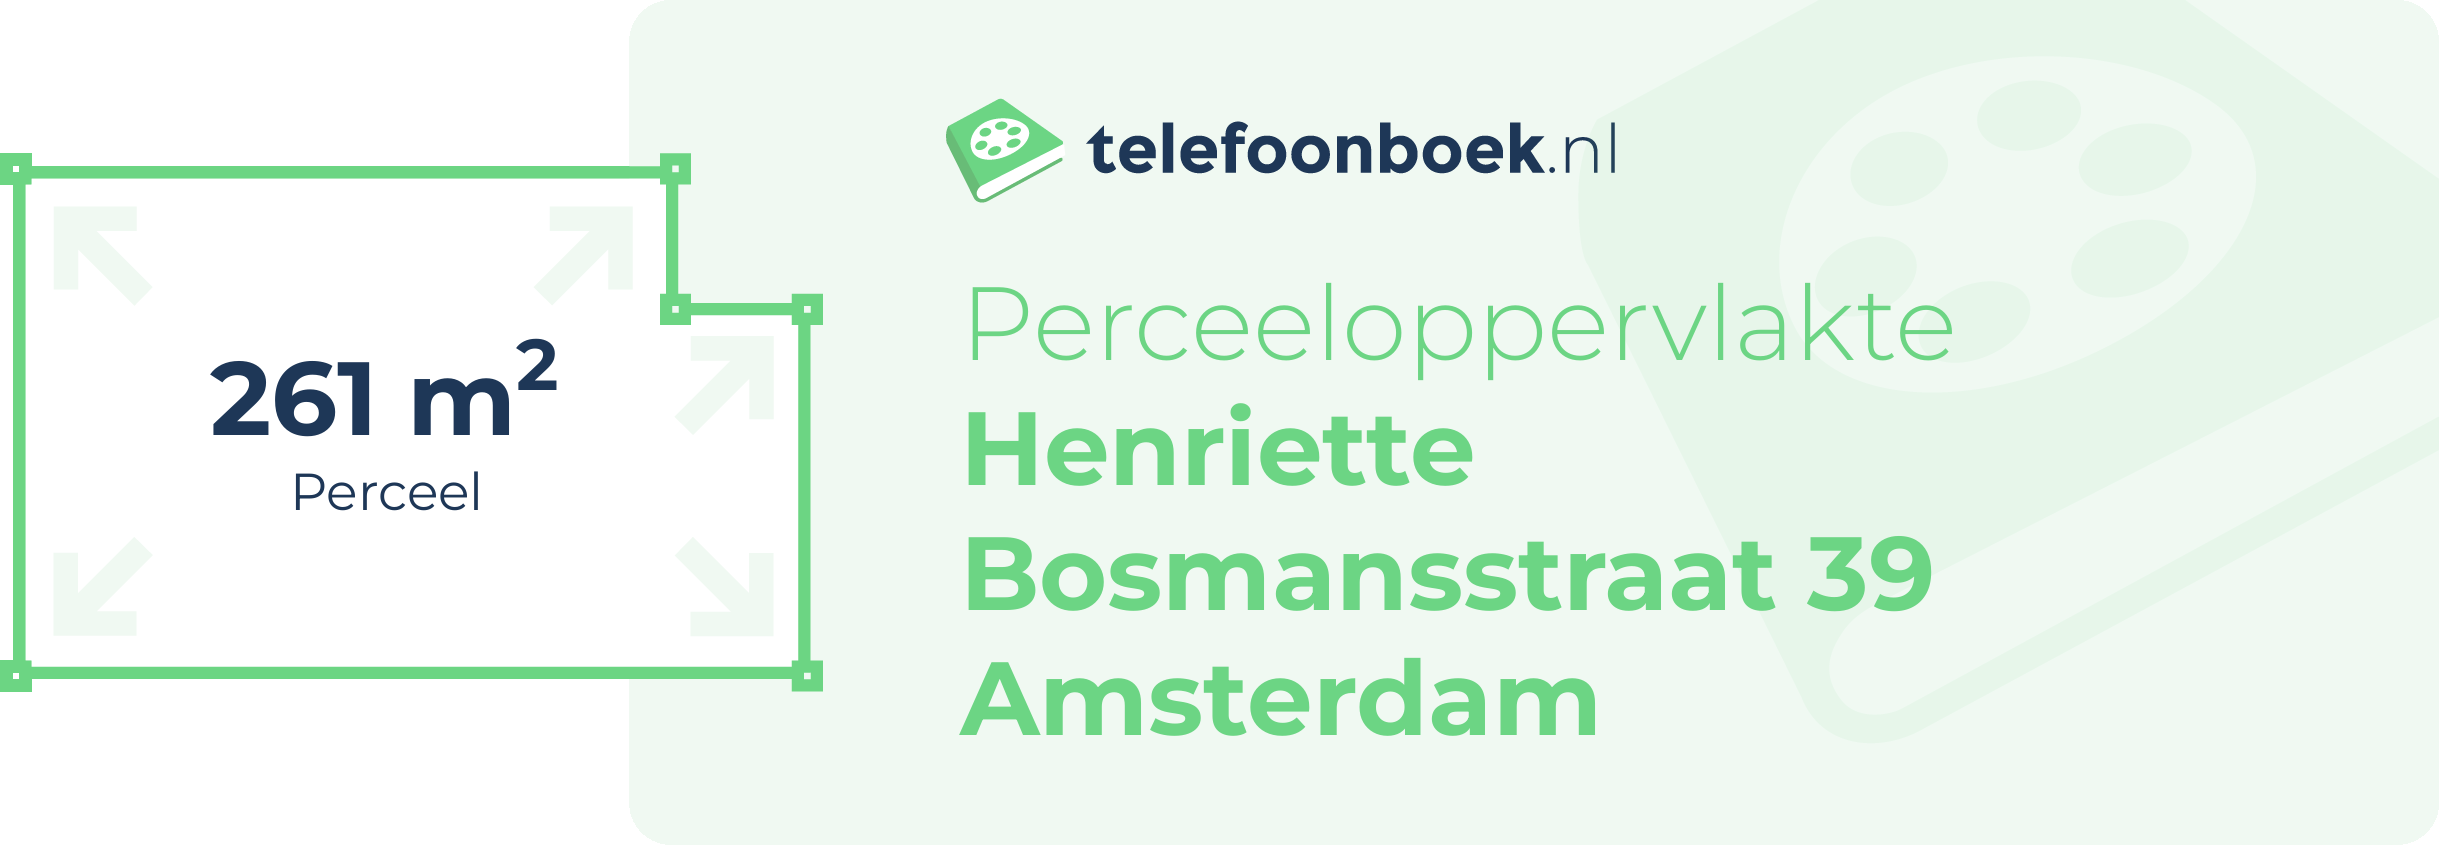 Perceeloppervlakte Henriette Bosmansstraat 39 Amsterdam